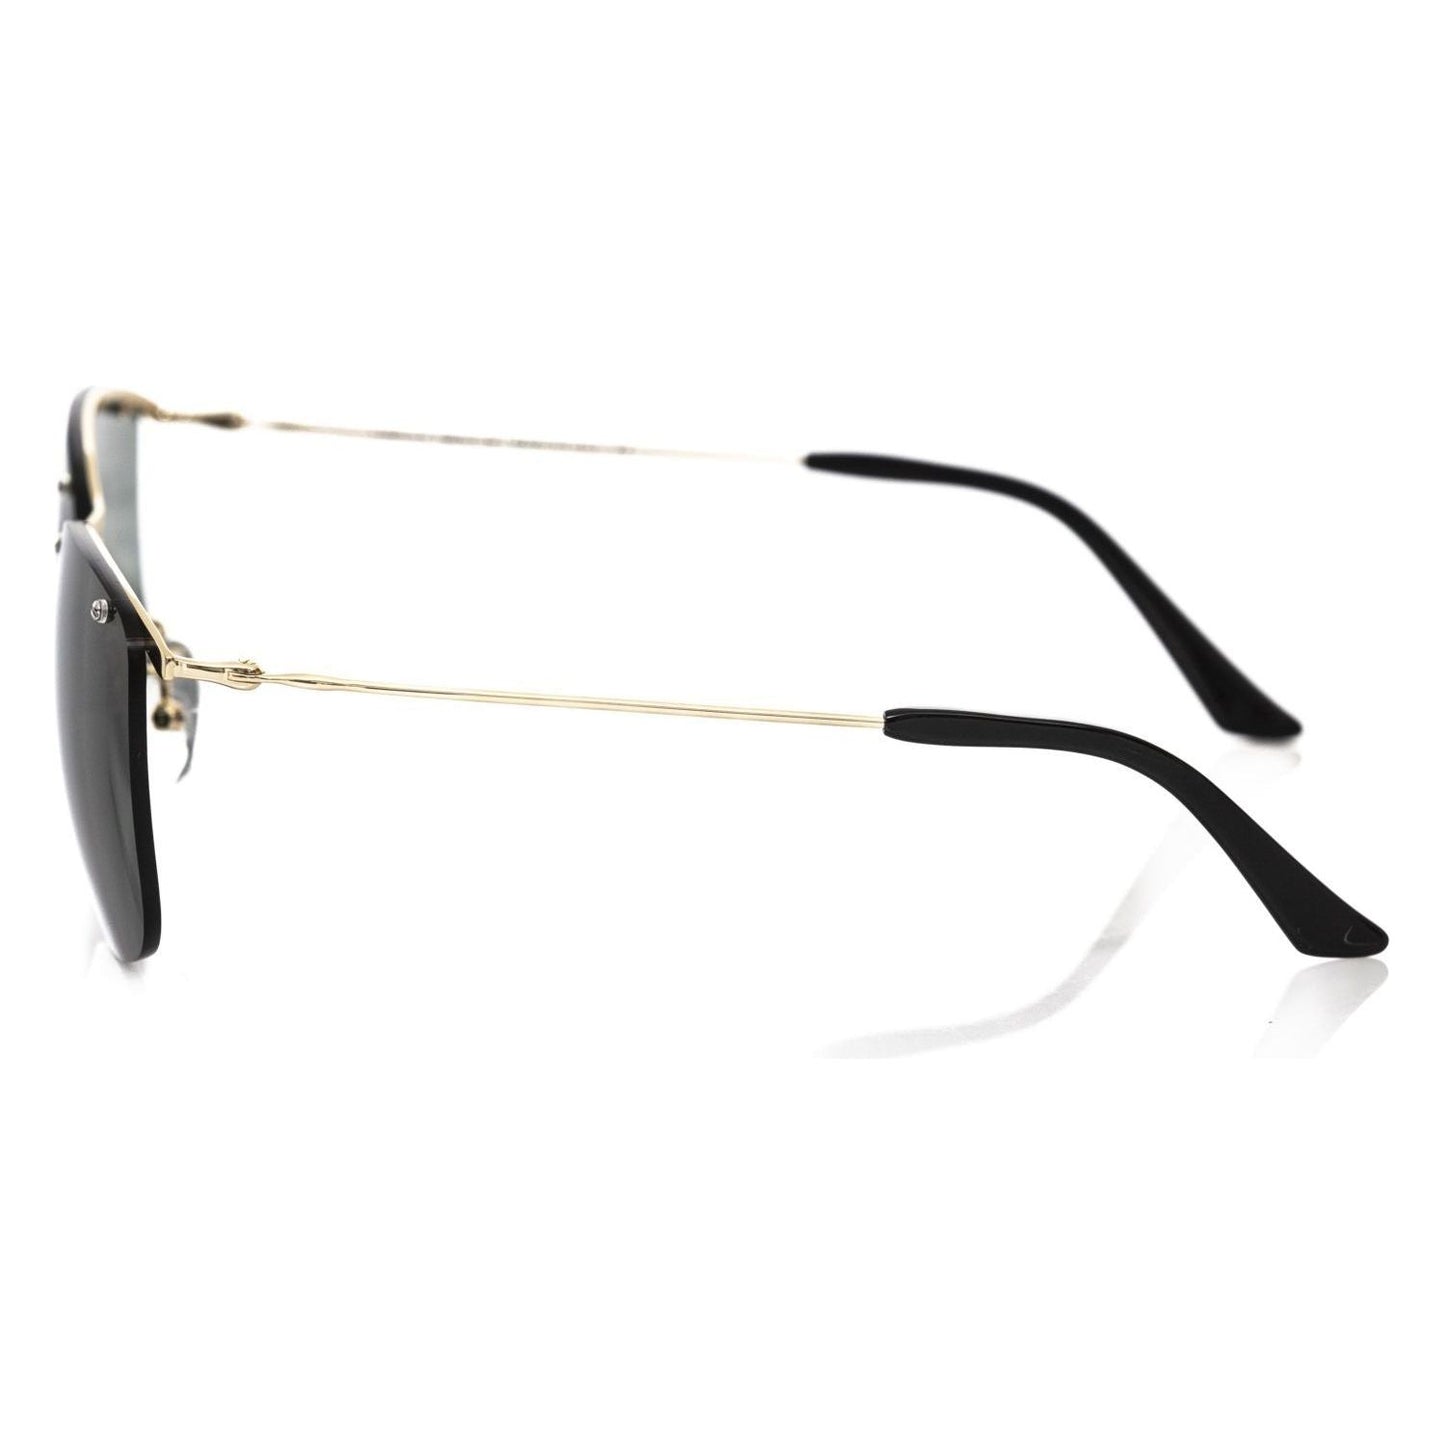 Frankie Morello Gold Accent Clubmaster Sunglasses black-metallic-fibre-sunglasses